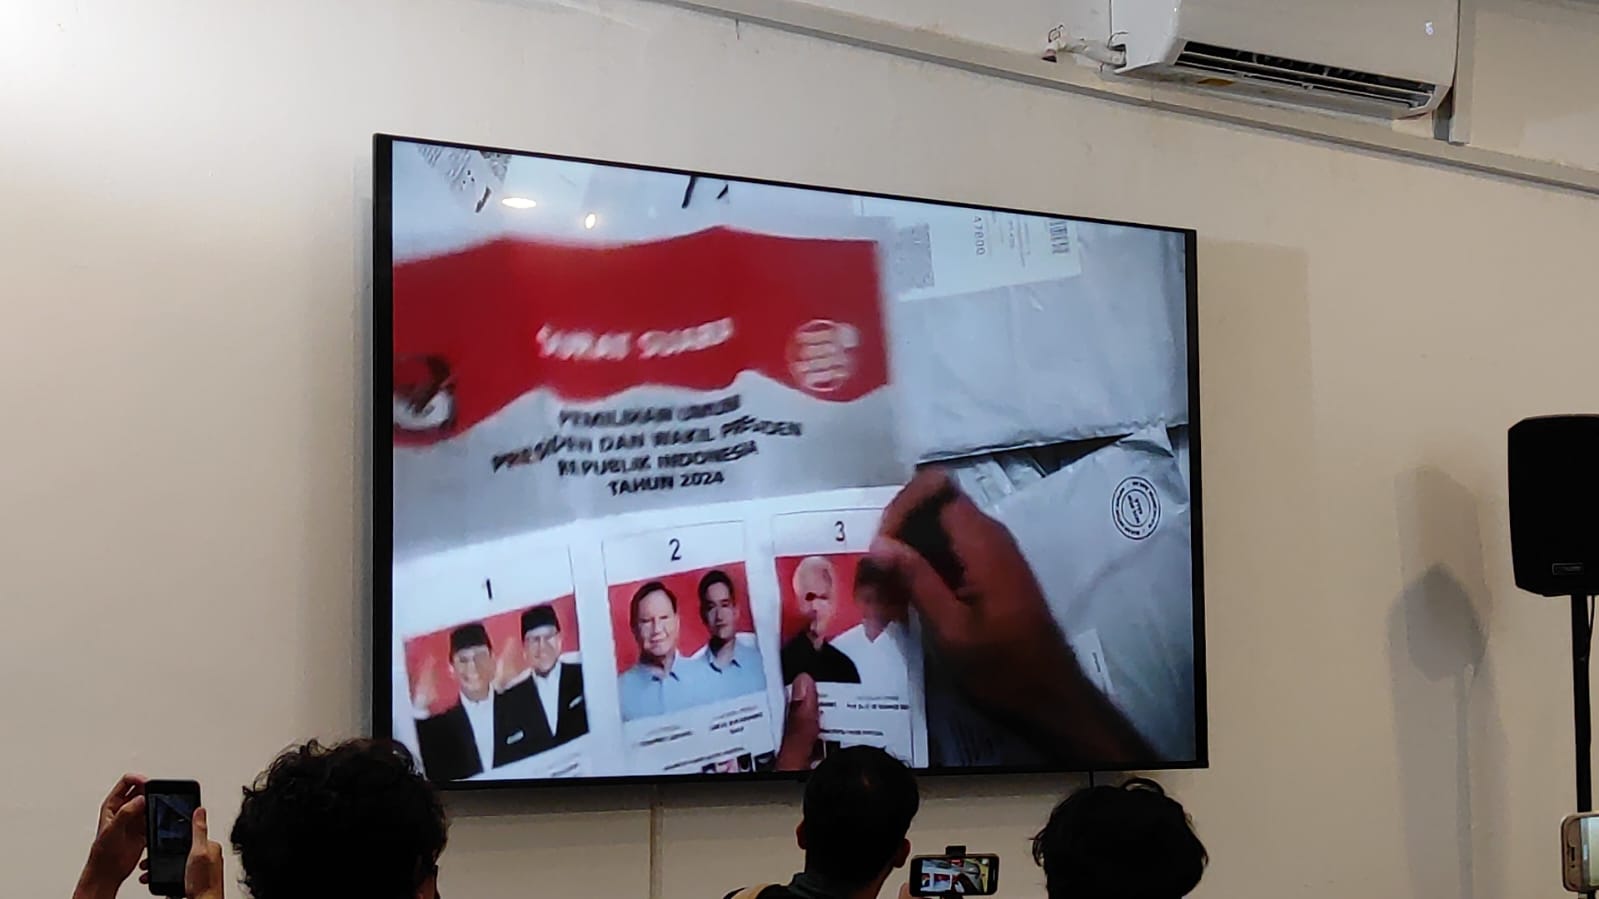 Viral! Indikasi Tindak Pidana Saat Pencoblosan di Malaysia, Usul Bawaslu: 'Coblos Ulang!' 